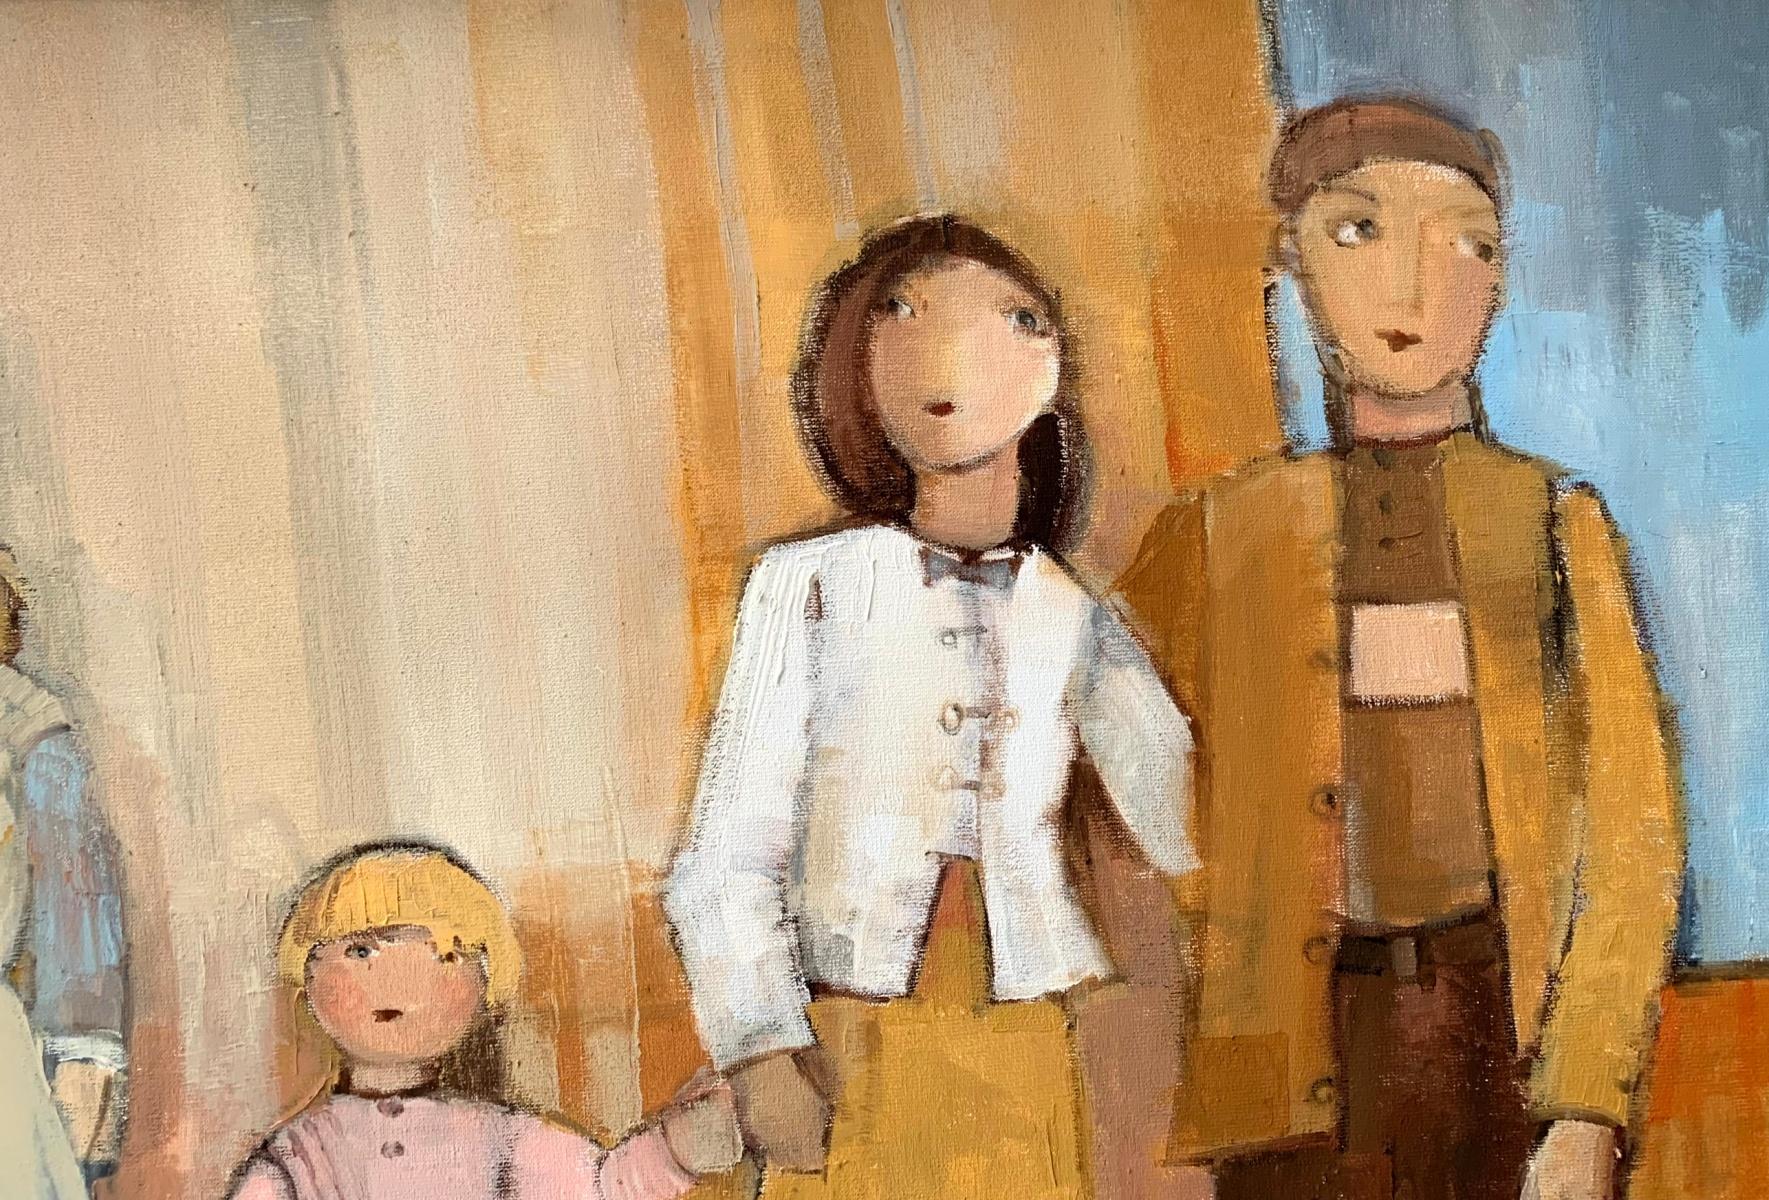 Zeitgenössisches figuratives Ölgemälde auf Leinwand der polnischen Künstlerin Malgorzata Rozmarynowska. Das Kunstwerk zeigt eine fünfköpfige Familie, Eltern mit drei Kindern. Sie stehen in einer Reihe. Die Farben des Bildes sind warm, die Hauptfarbe